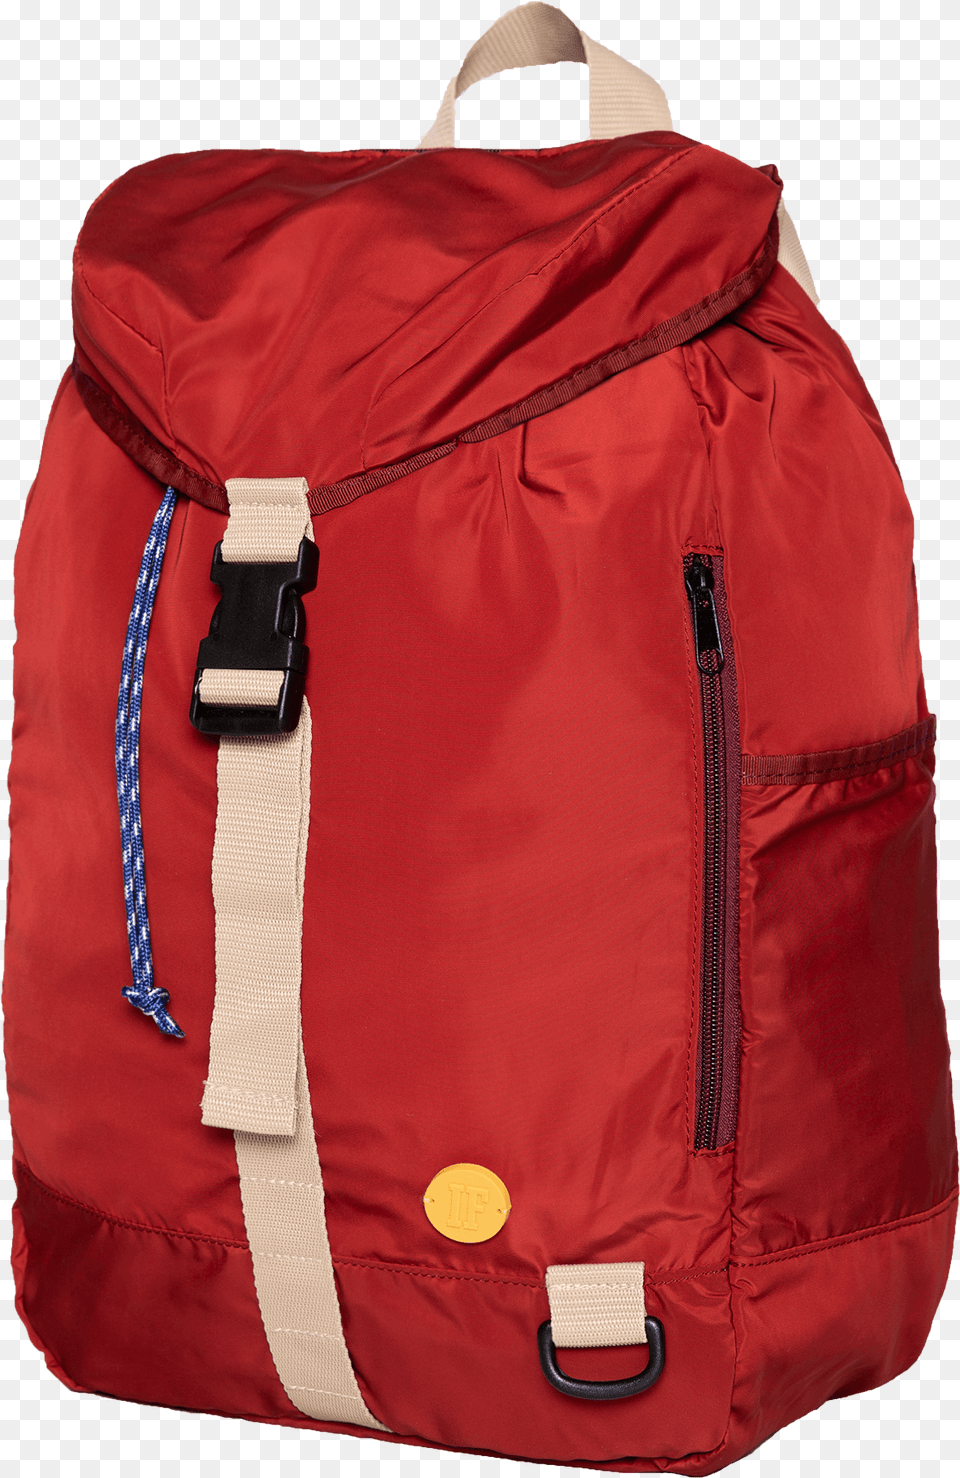 Backpack U More Red, Bag, Clothing, Coat, Jacket Free Transparent Png